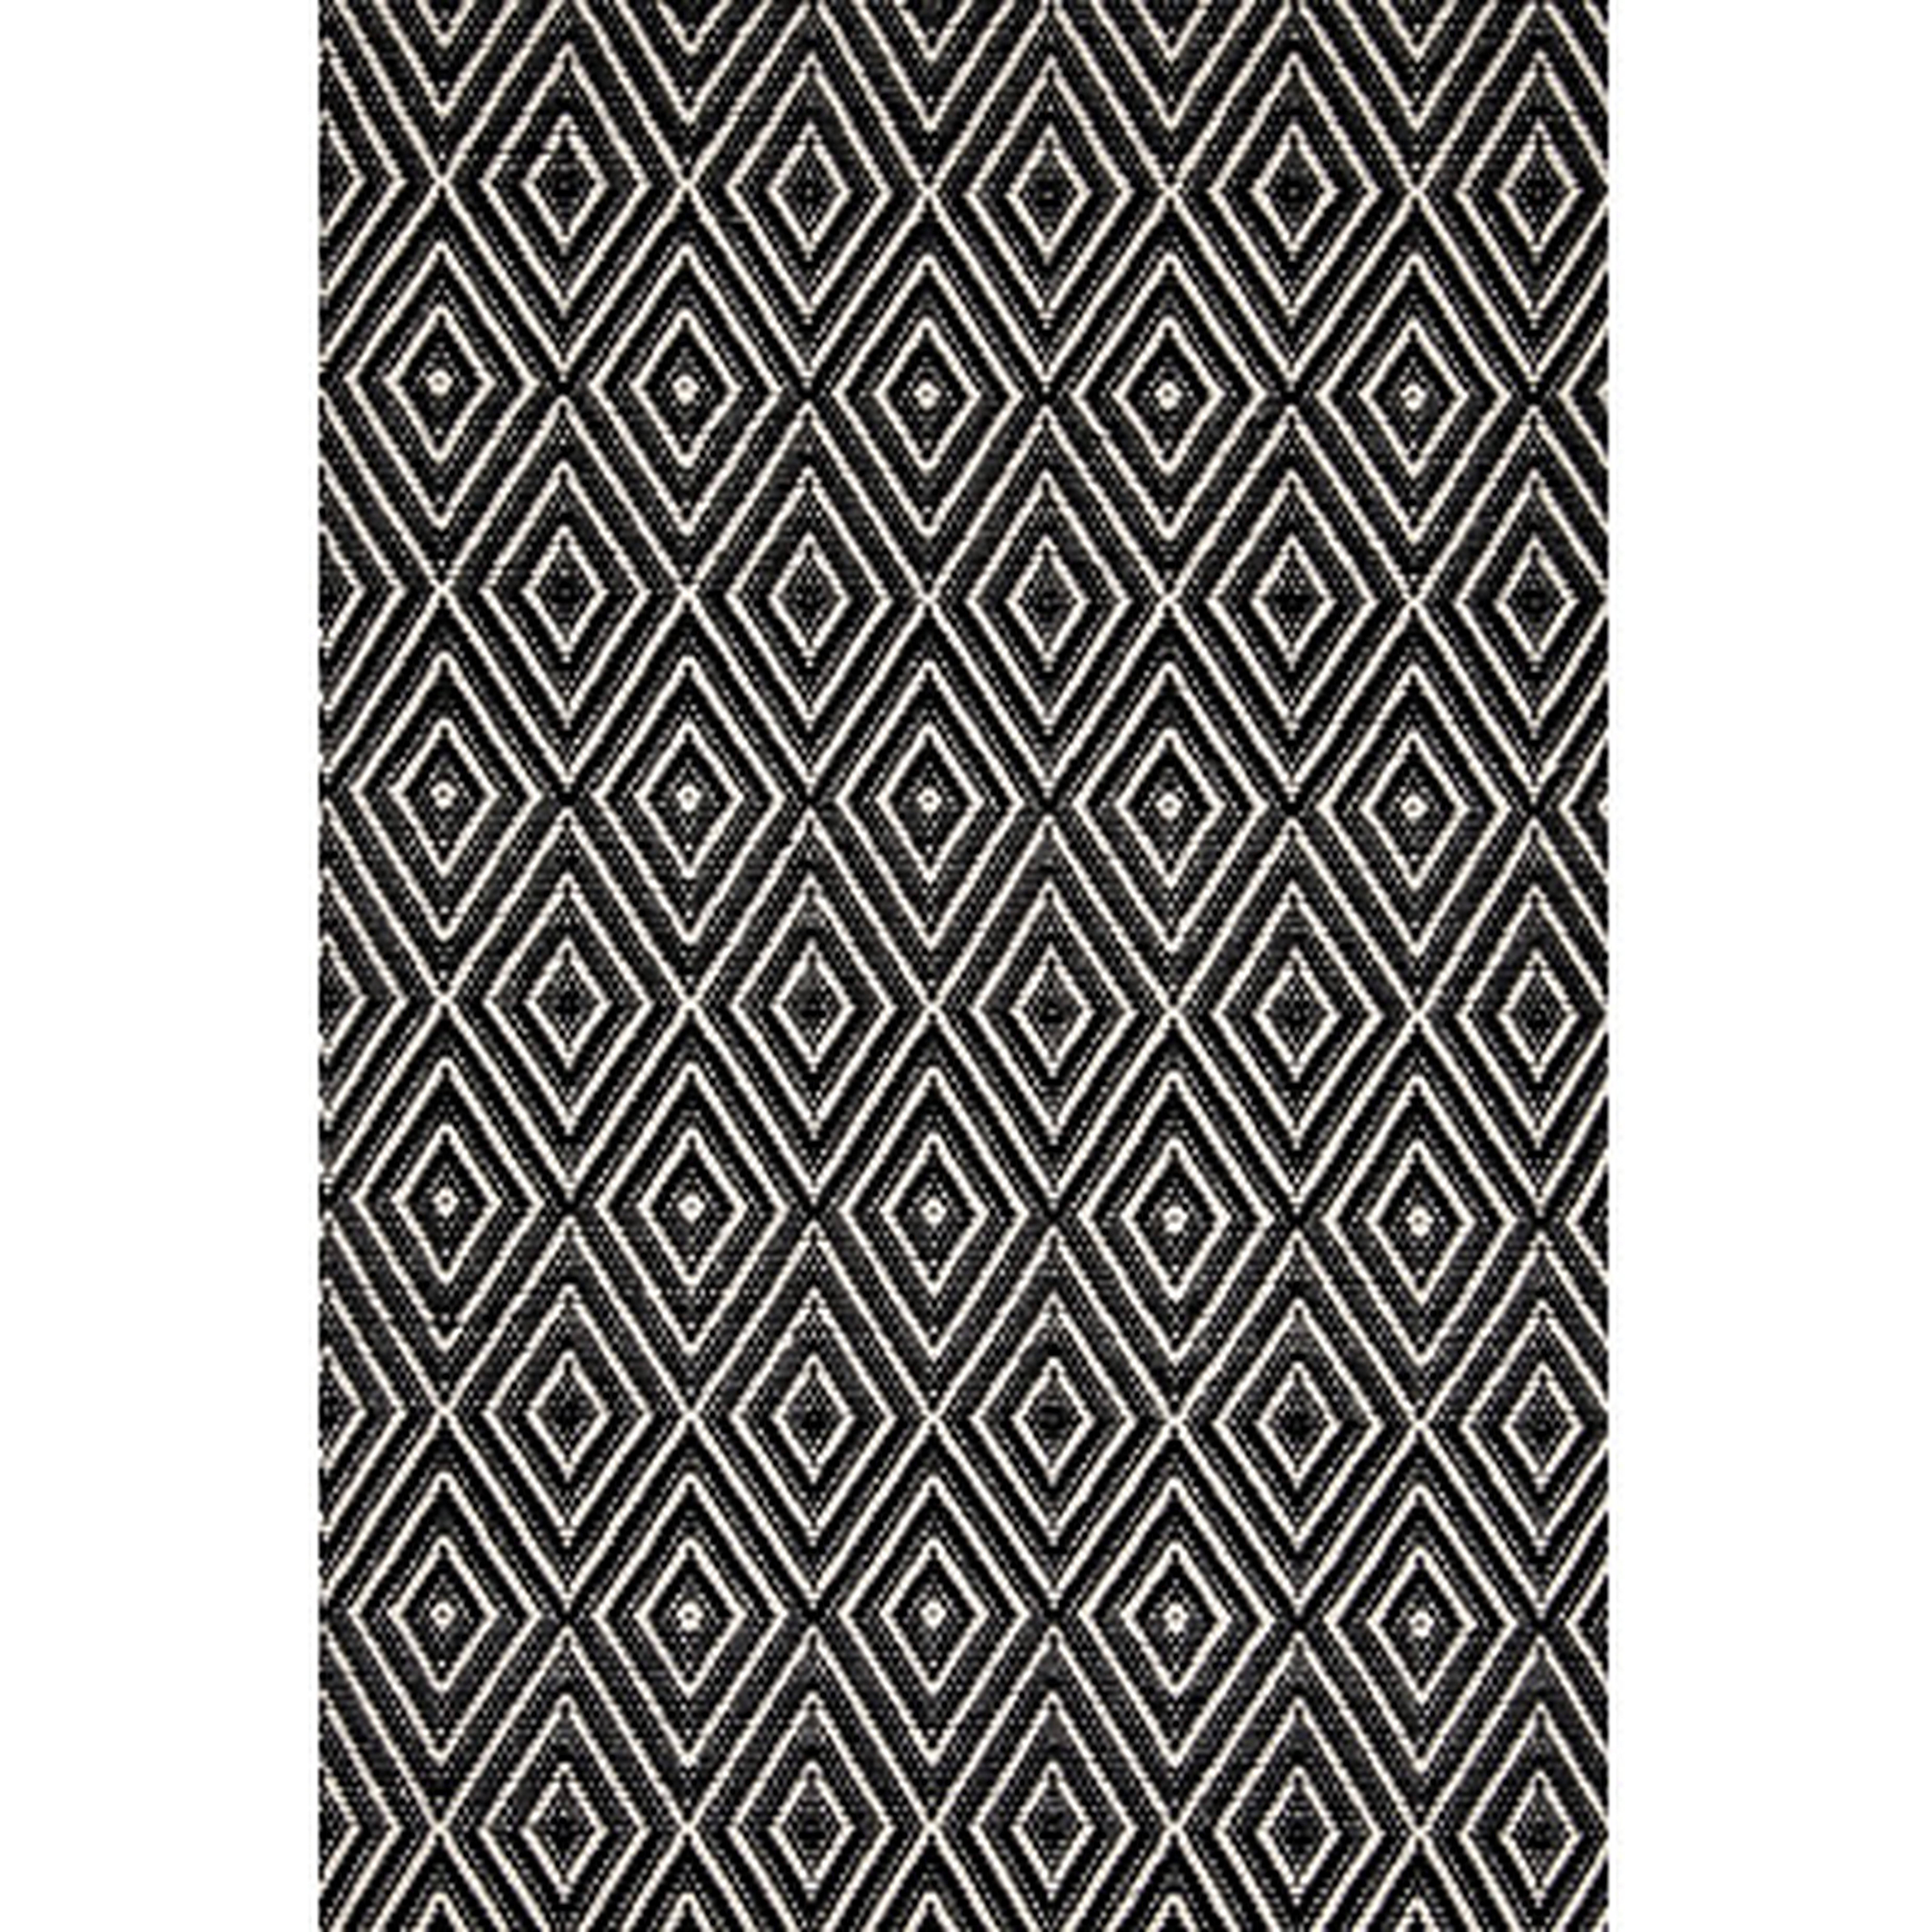 Hand-Woven Indoor/Outdoor Area Rug, Black, 6' x 9' - Wayfair